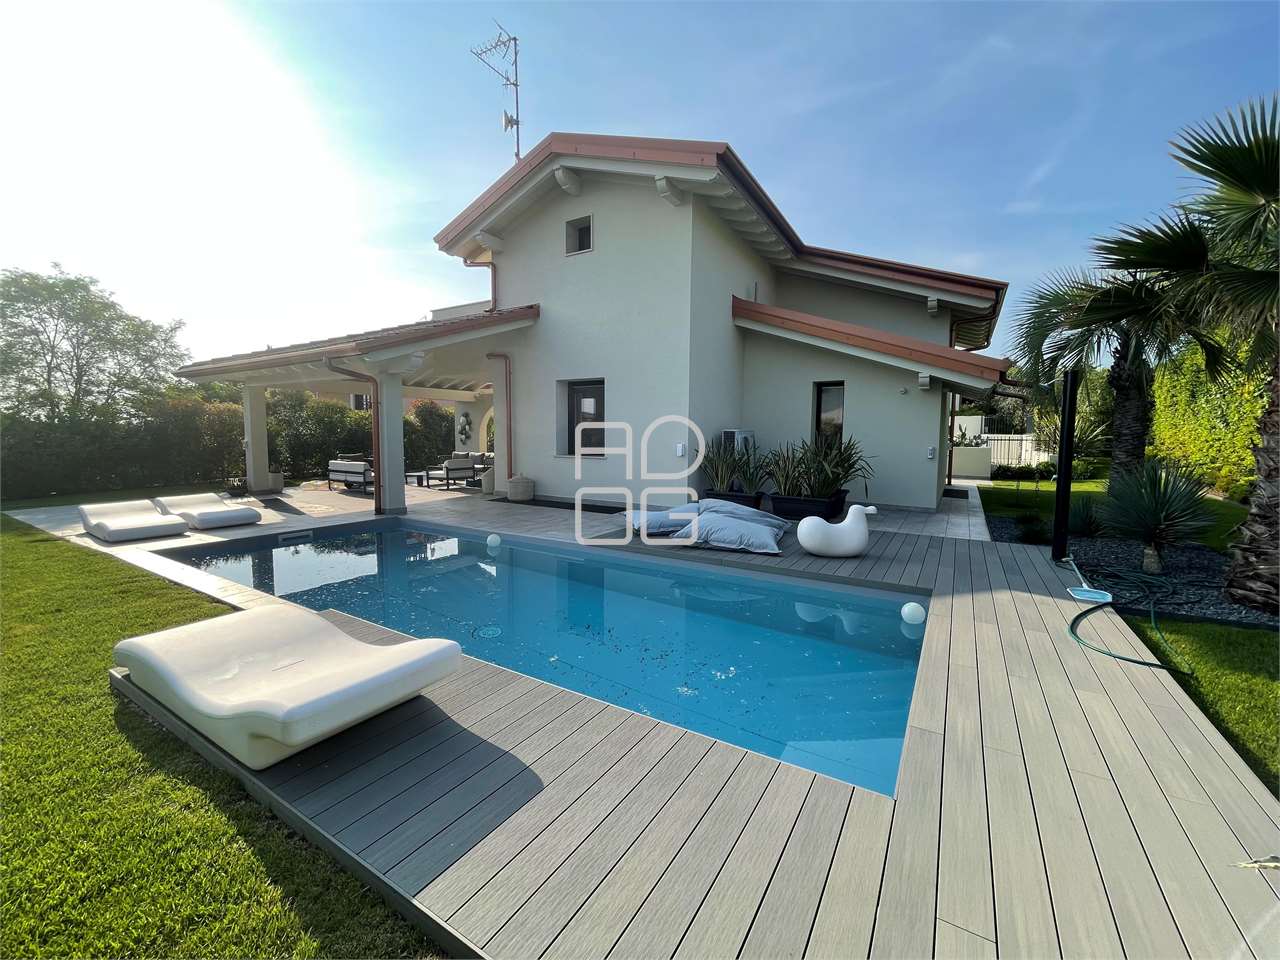 Elegant detached villa with private pool in Lonato del Garda